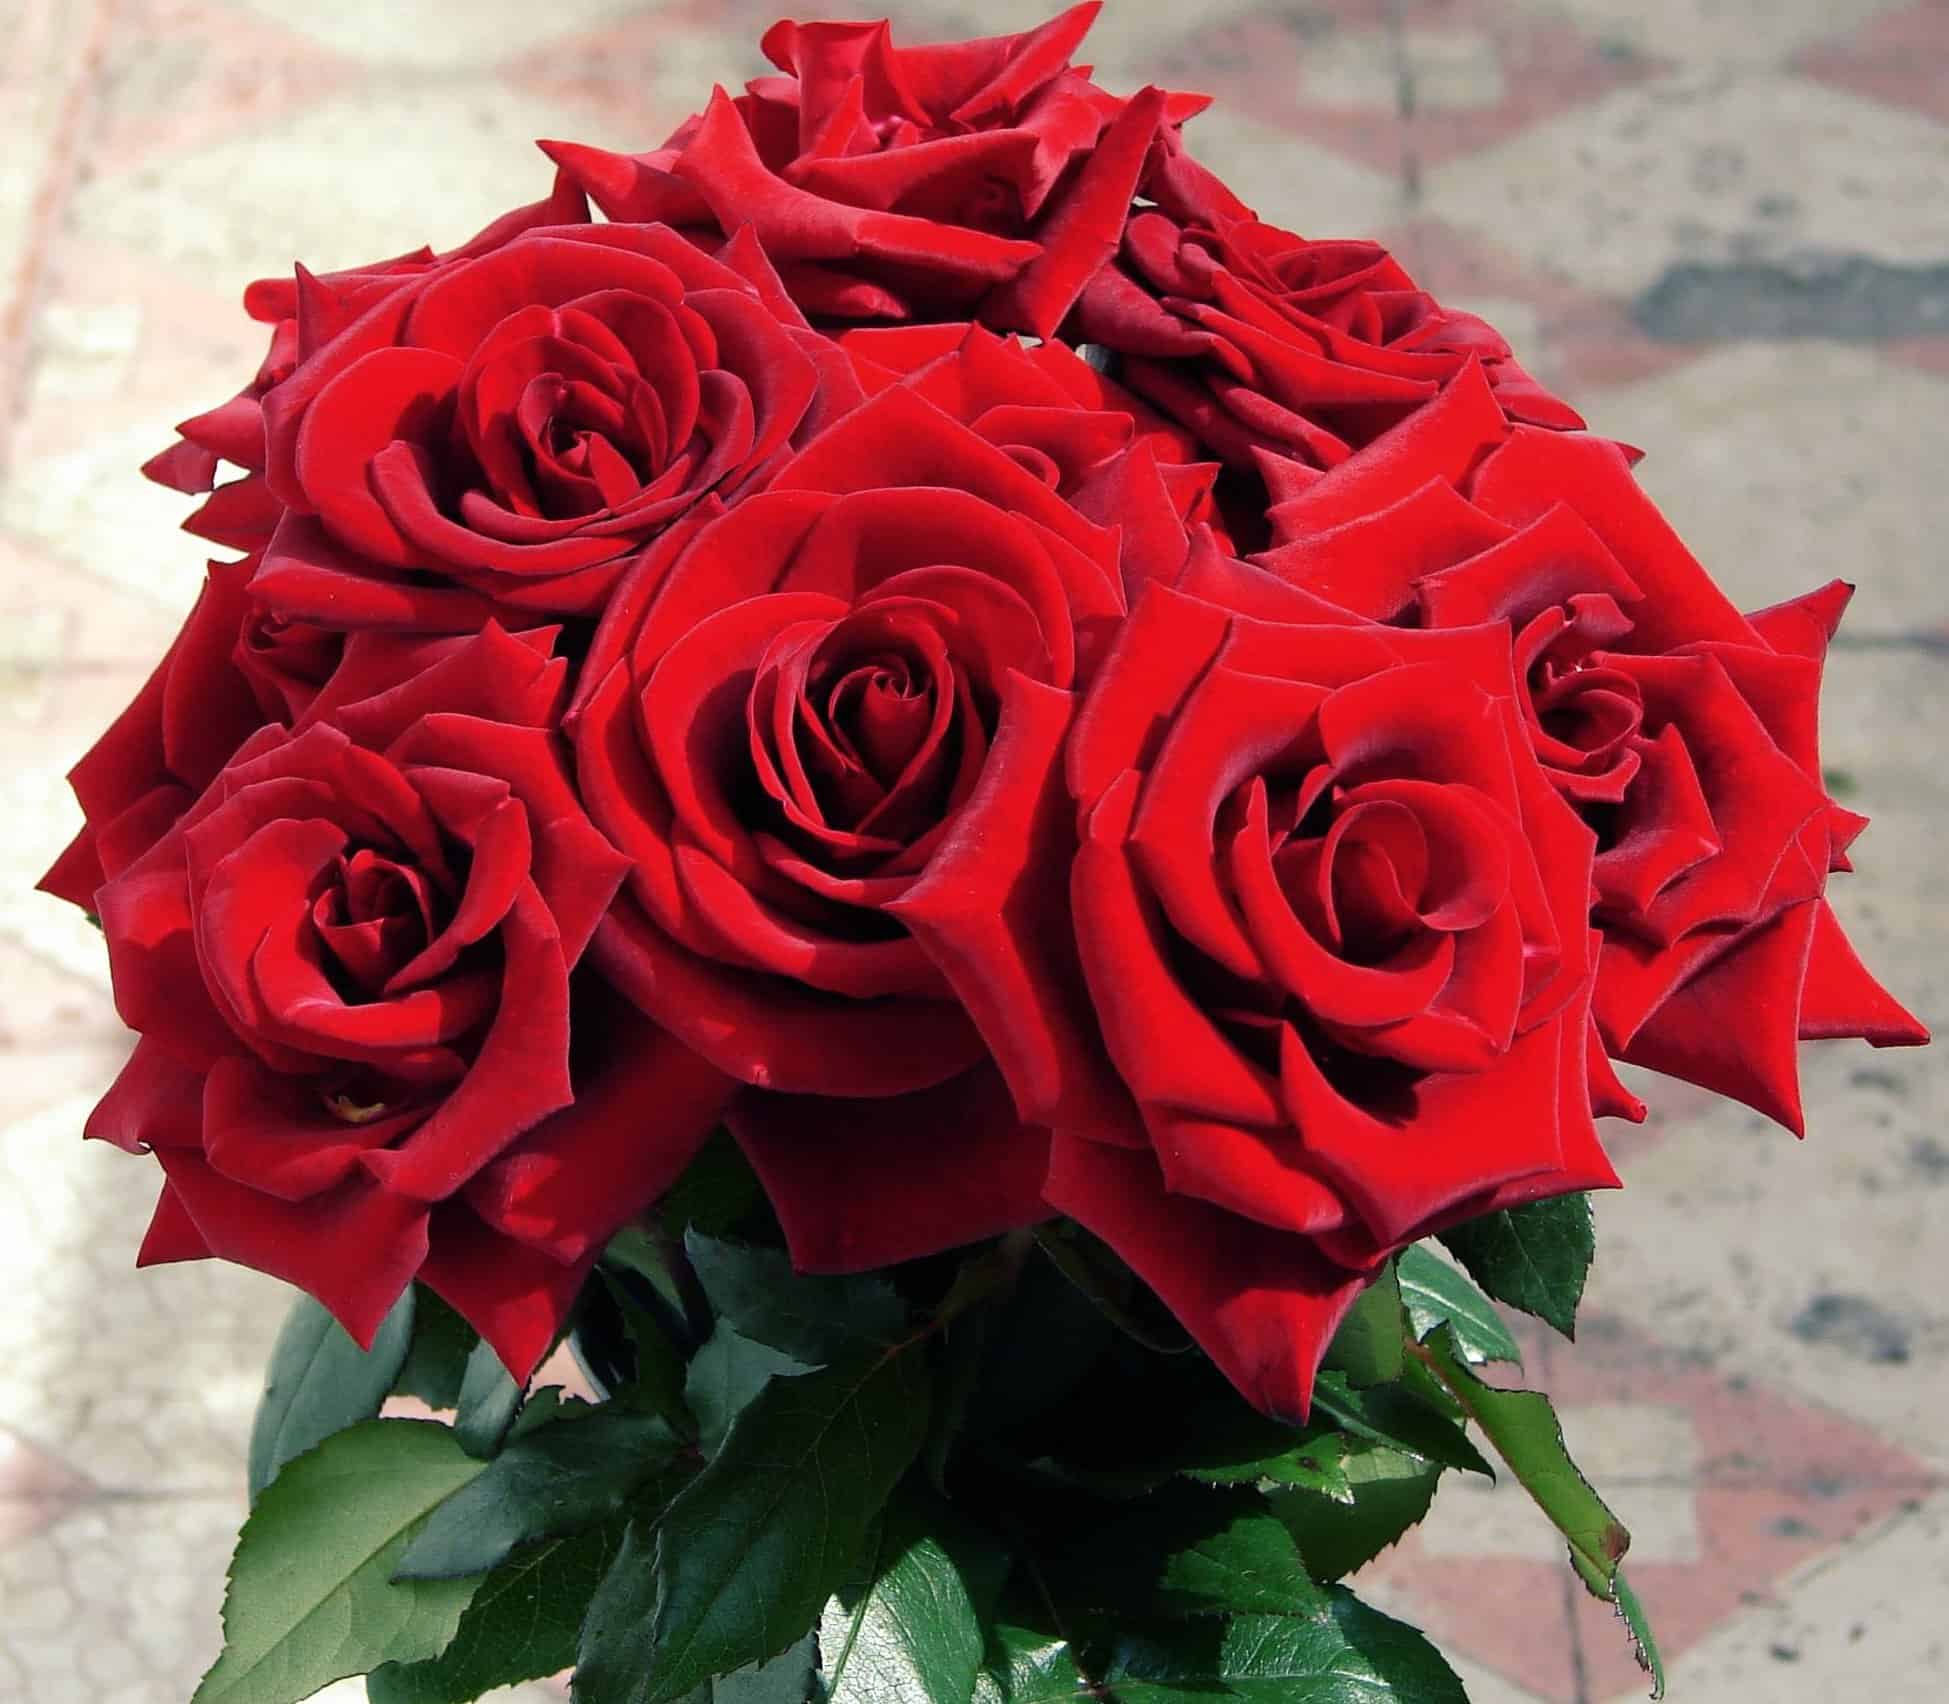 Image libre: horticulturepetal, rose, flore, bouquet, fleur rouge,  arrangement